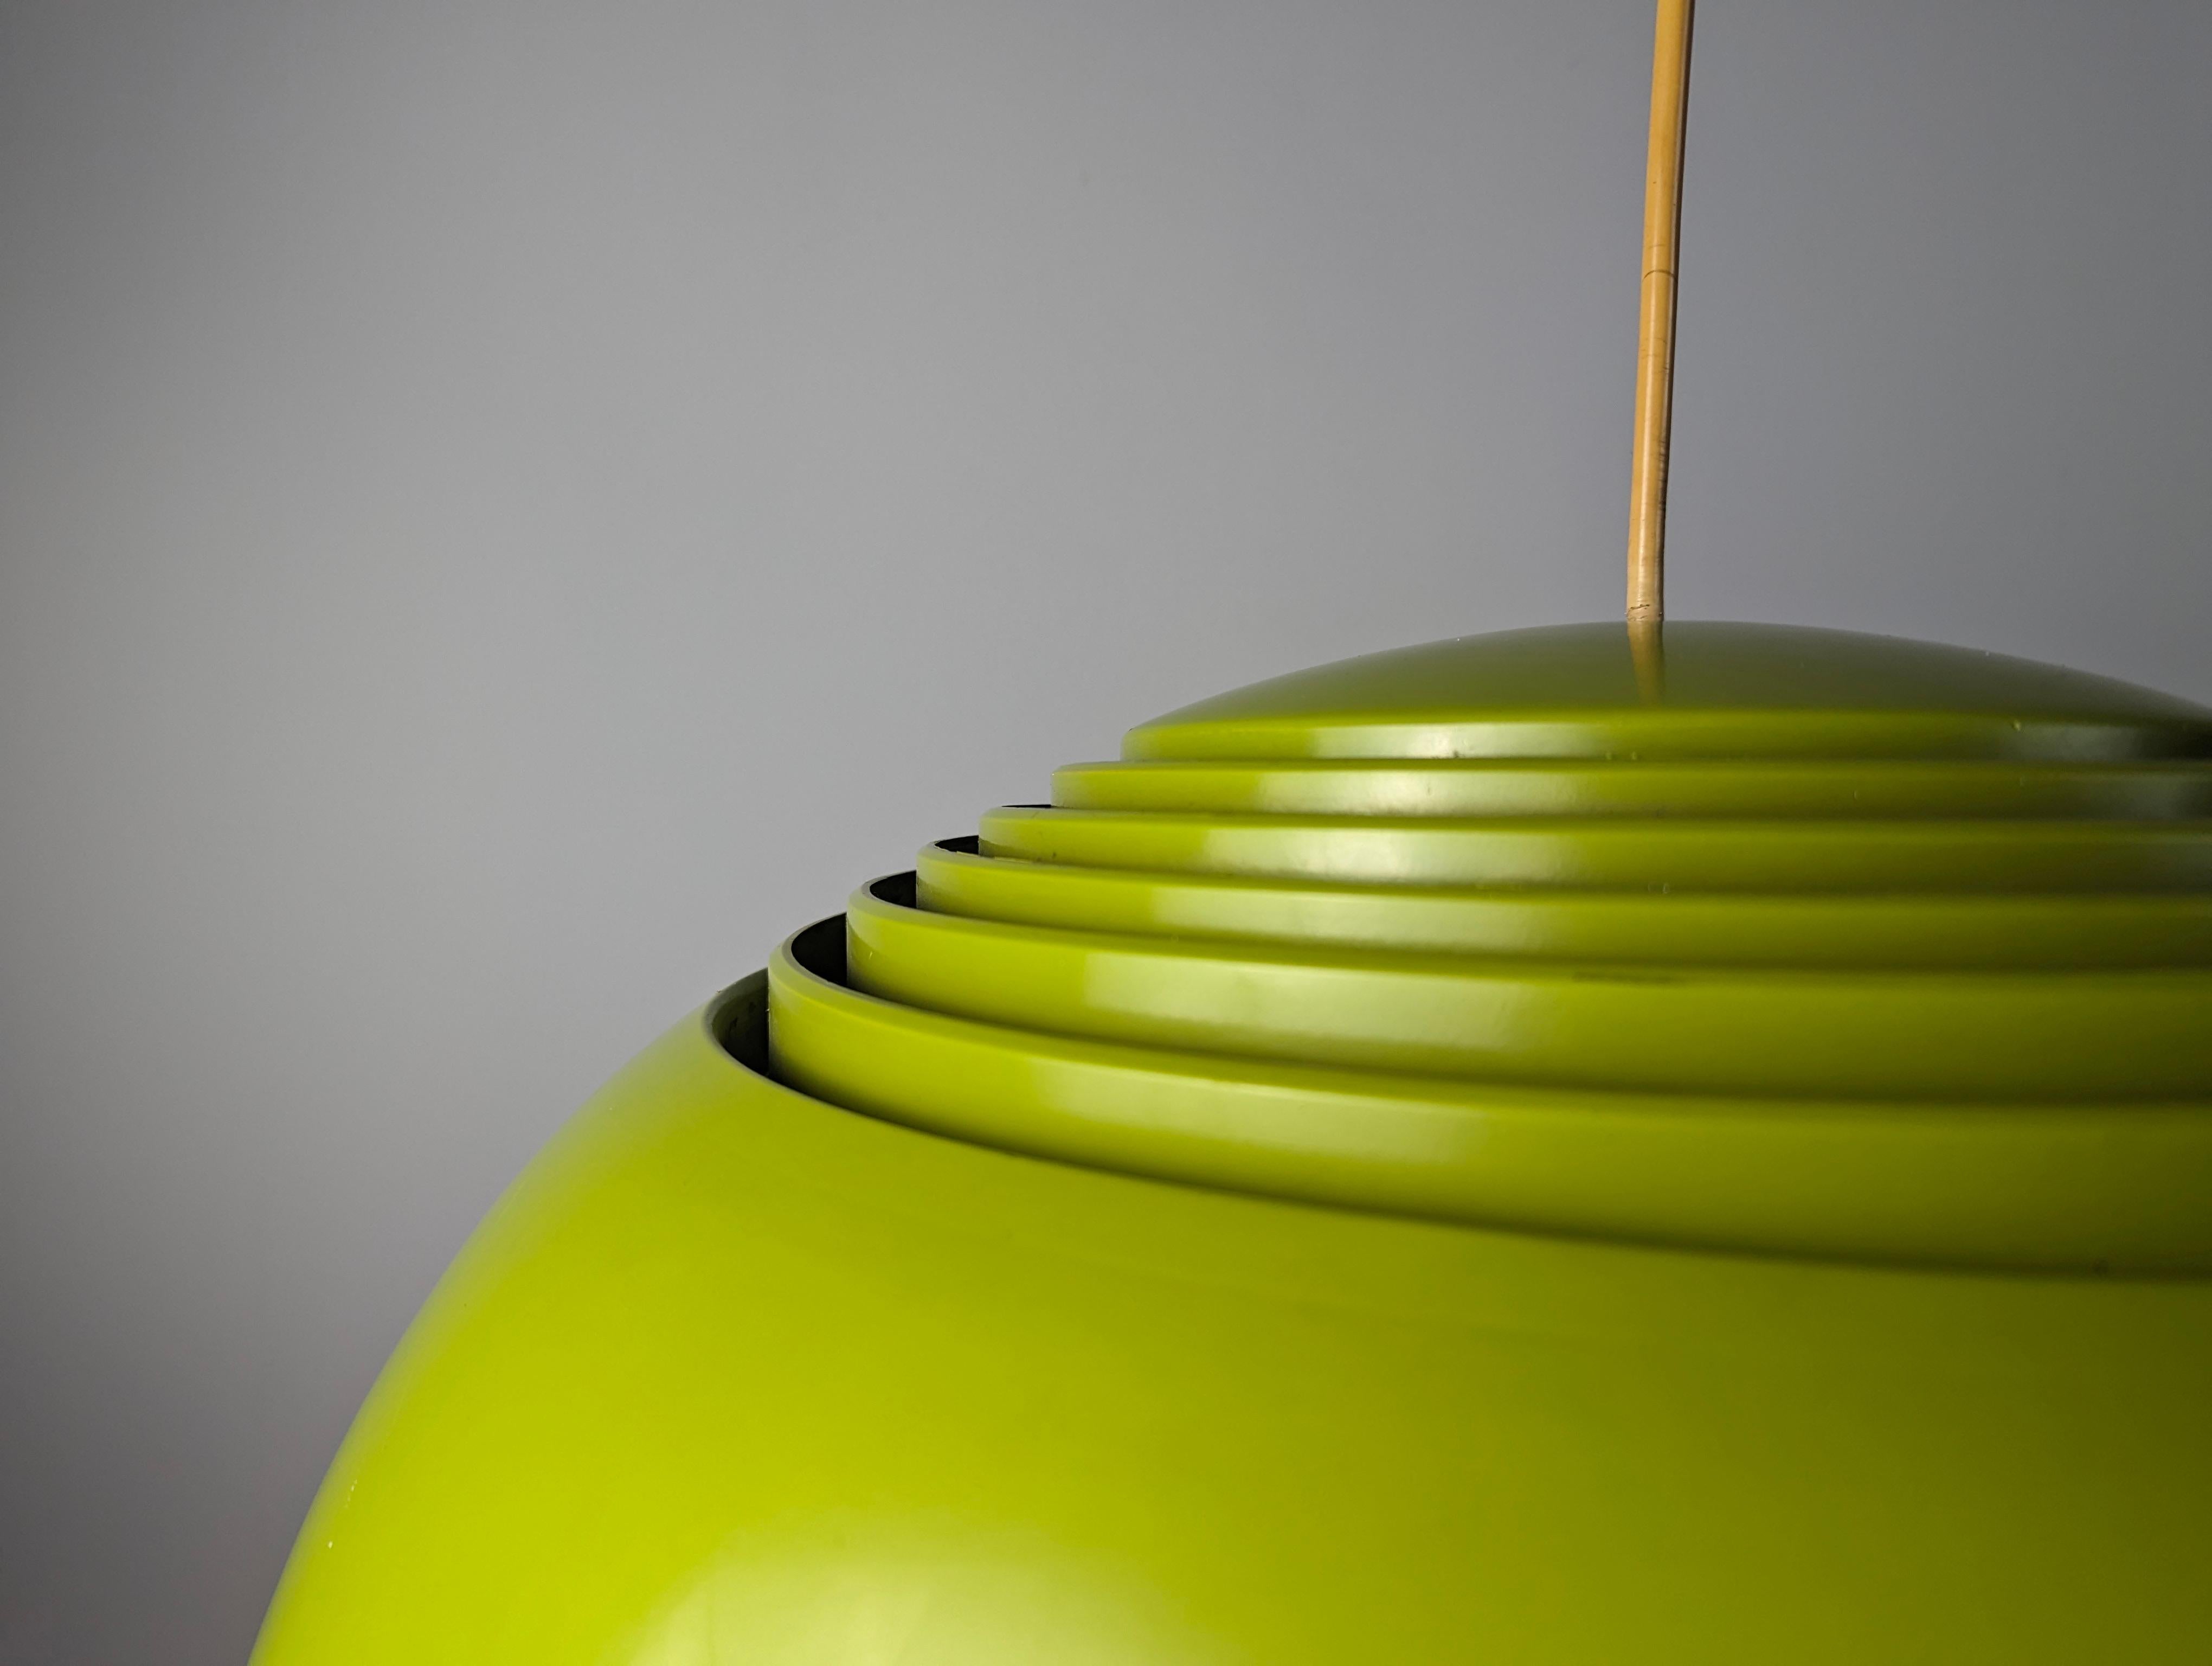 Lampe suspendue AJ Royal originale des années 60 en couleur vert lime extrêmement rare et rare de sa production conçue par Arne Jacobsen et produite par Louis Poulsen pour l'hôtel SAS Royal à Copenhague, l'AJ Royal est une icône qui suit le concept